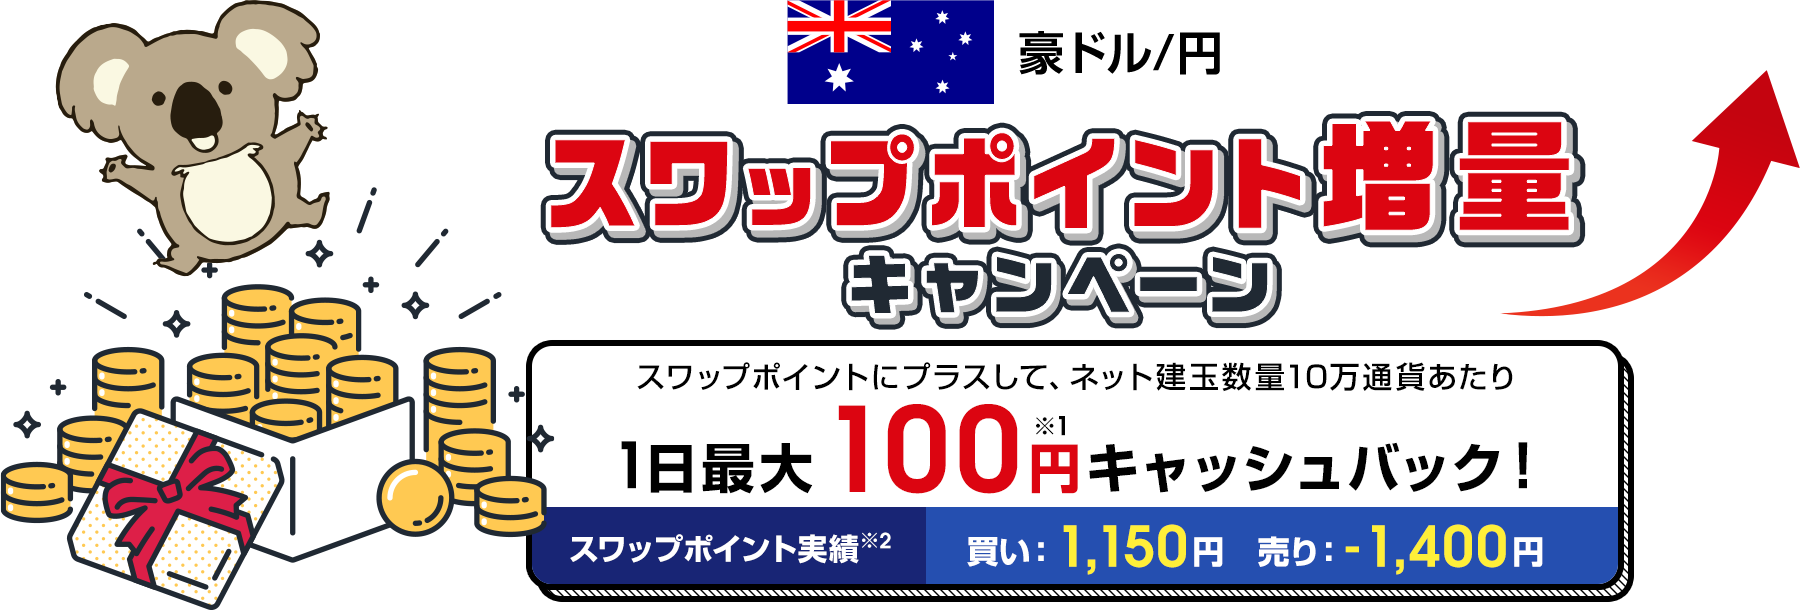 豪ドル/円 スワップポイント増量キャンペーン